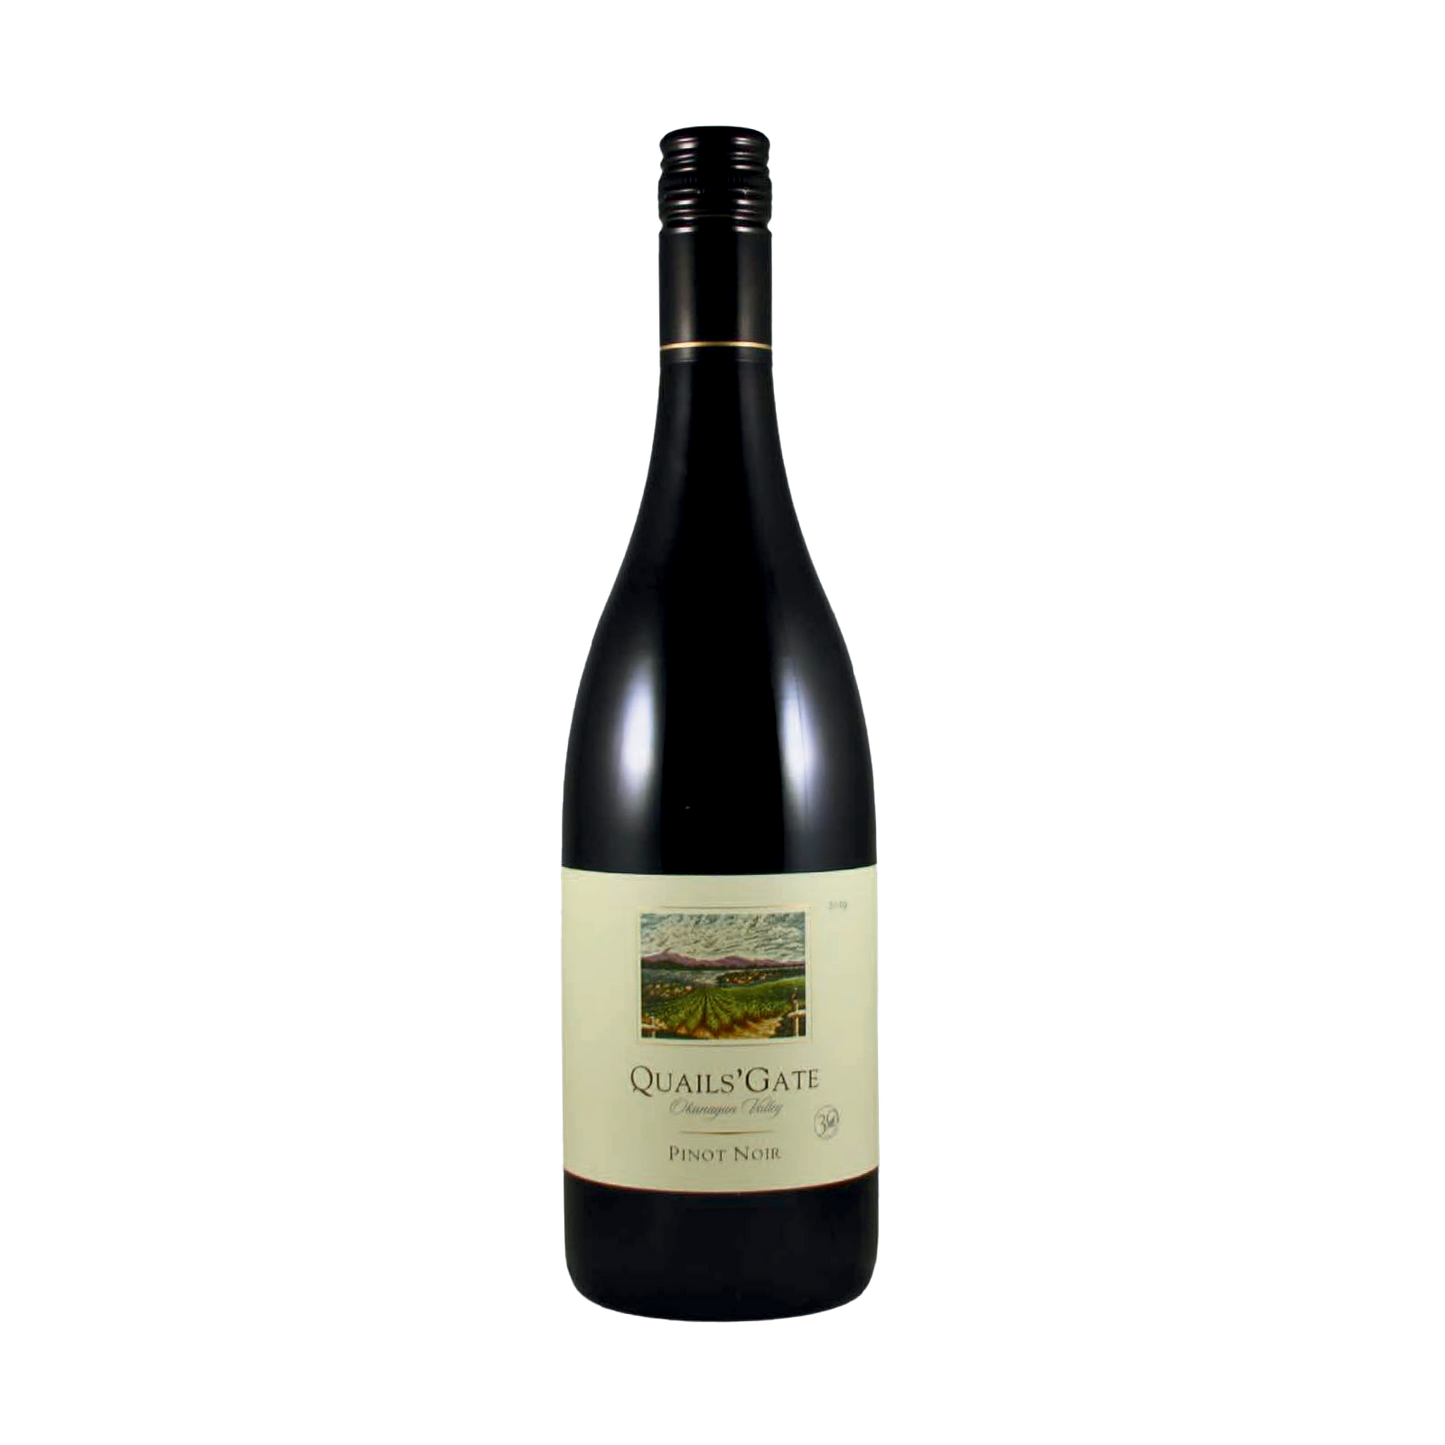 A bottle of Quails' Gate 2019 Pinot Noir, Okagnagan Valley